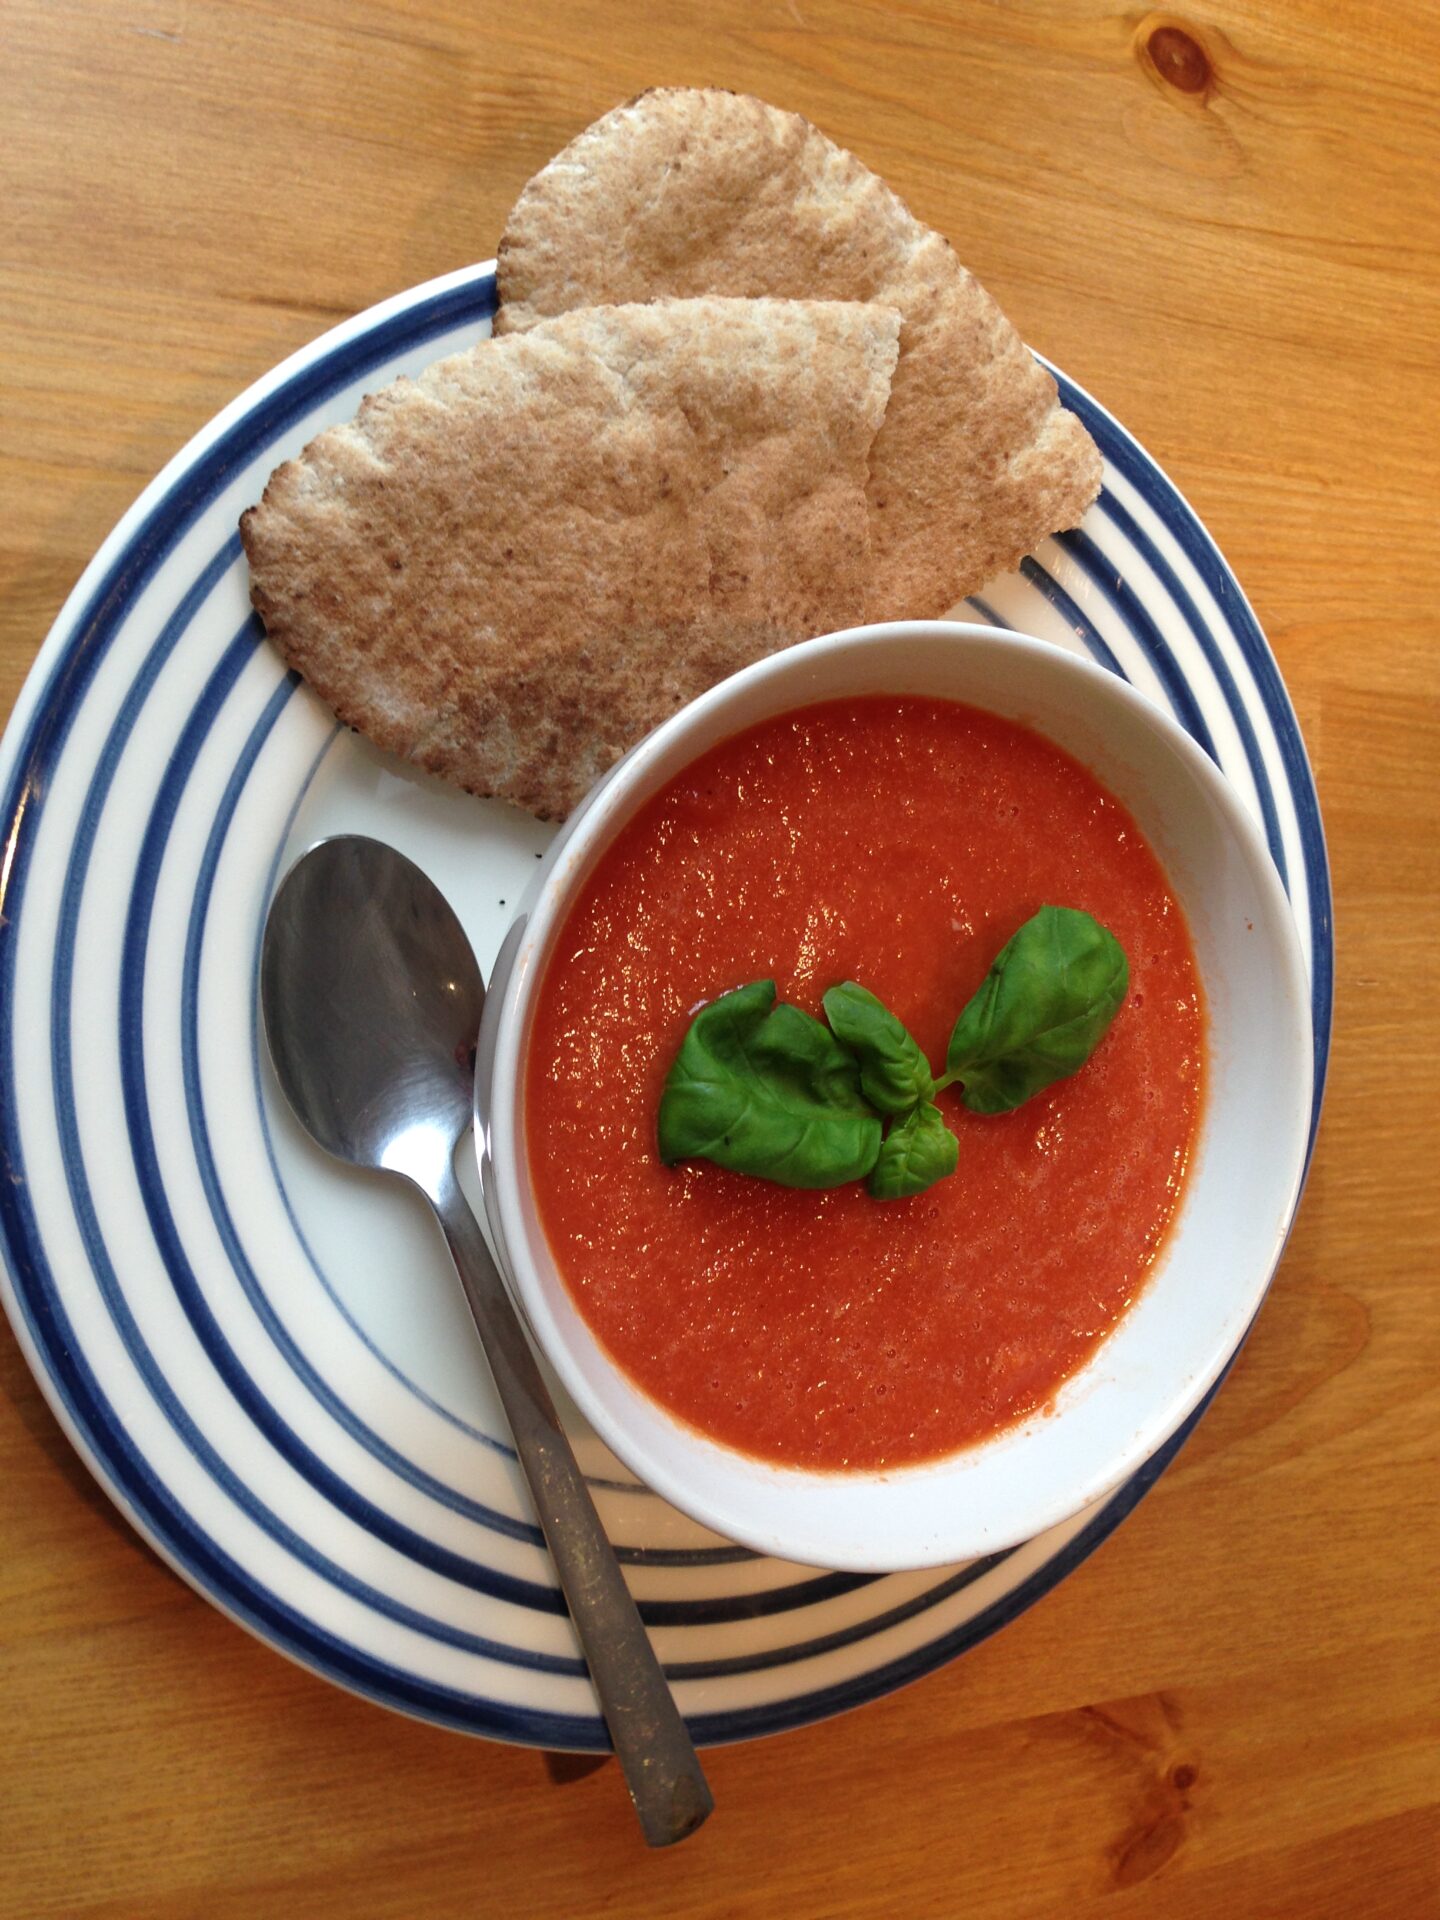 Super quick tomato soup recipe